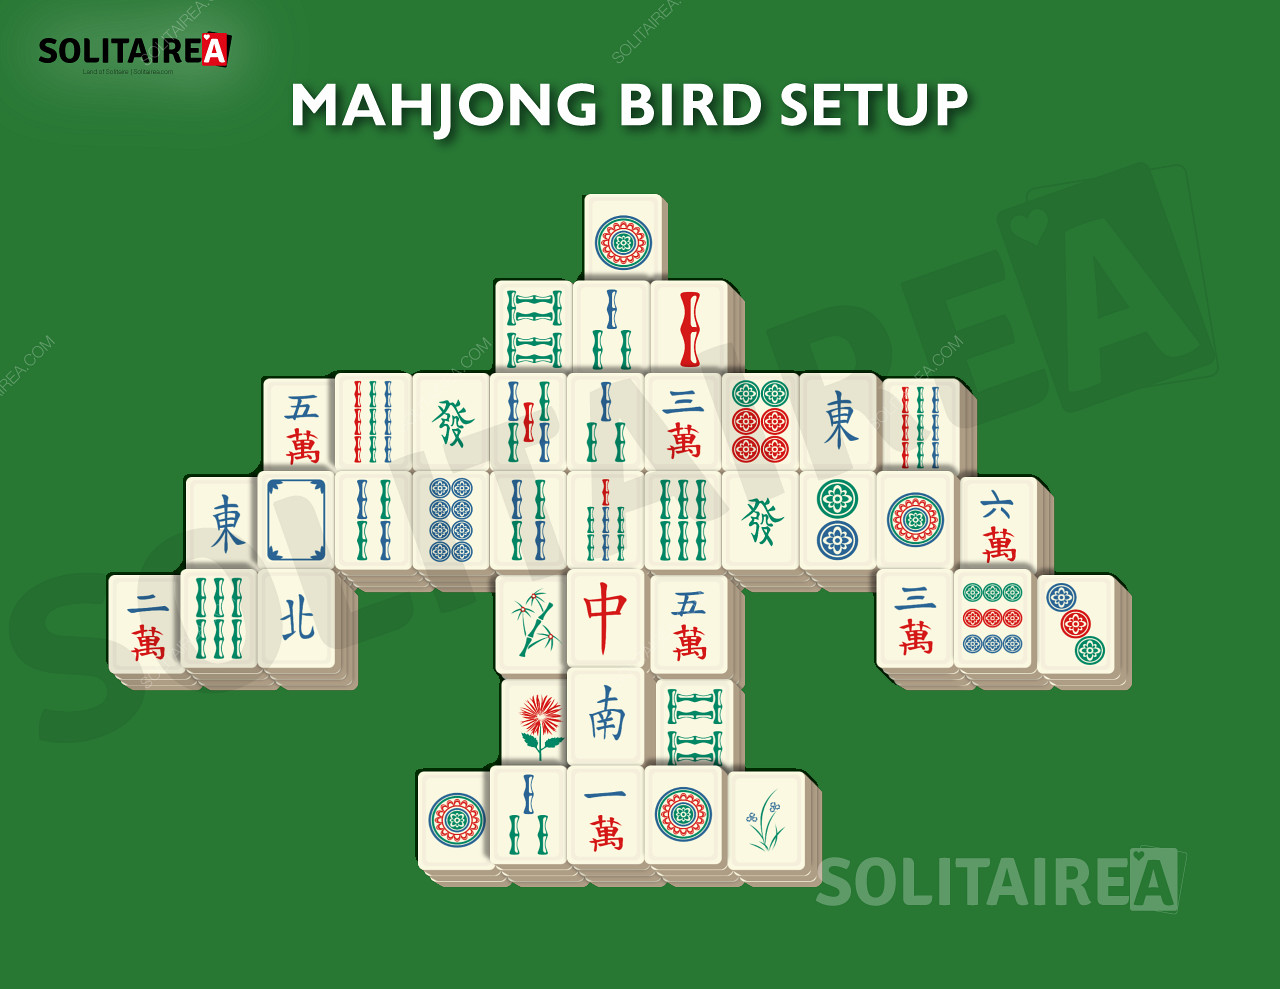 Configuração e estratégia do Mahjong Bird